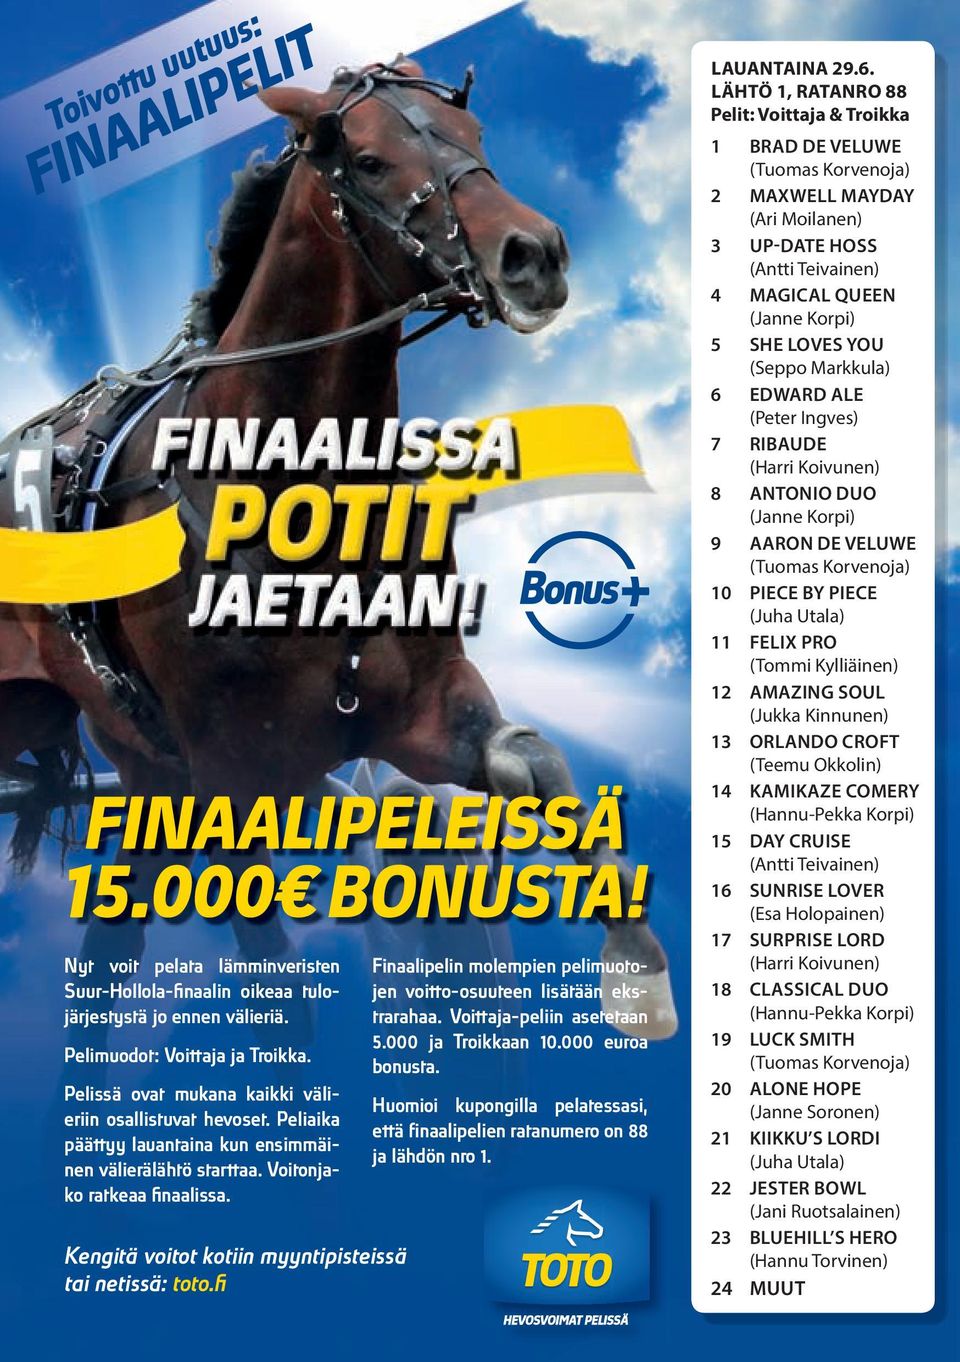 Kengitä voitot kotiin myyntipisteissä tai netissä: toto.fi Finaalipelin molempien pelimuotojen voitto-osuuteen lisätään ekstrarahaa. Voittaja-peliin asetetaan 5.000 ja Troikkaan 0.000 euroa bonusta.